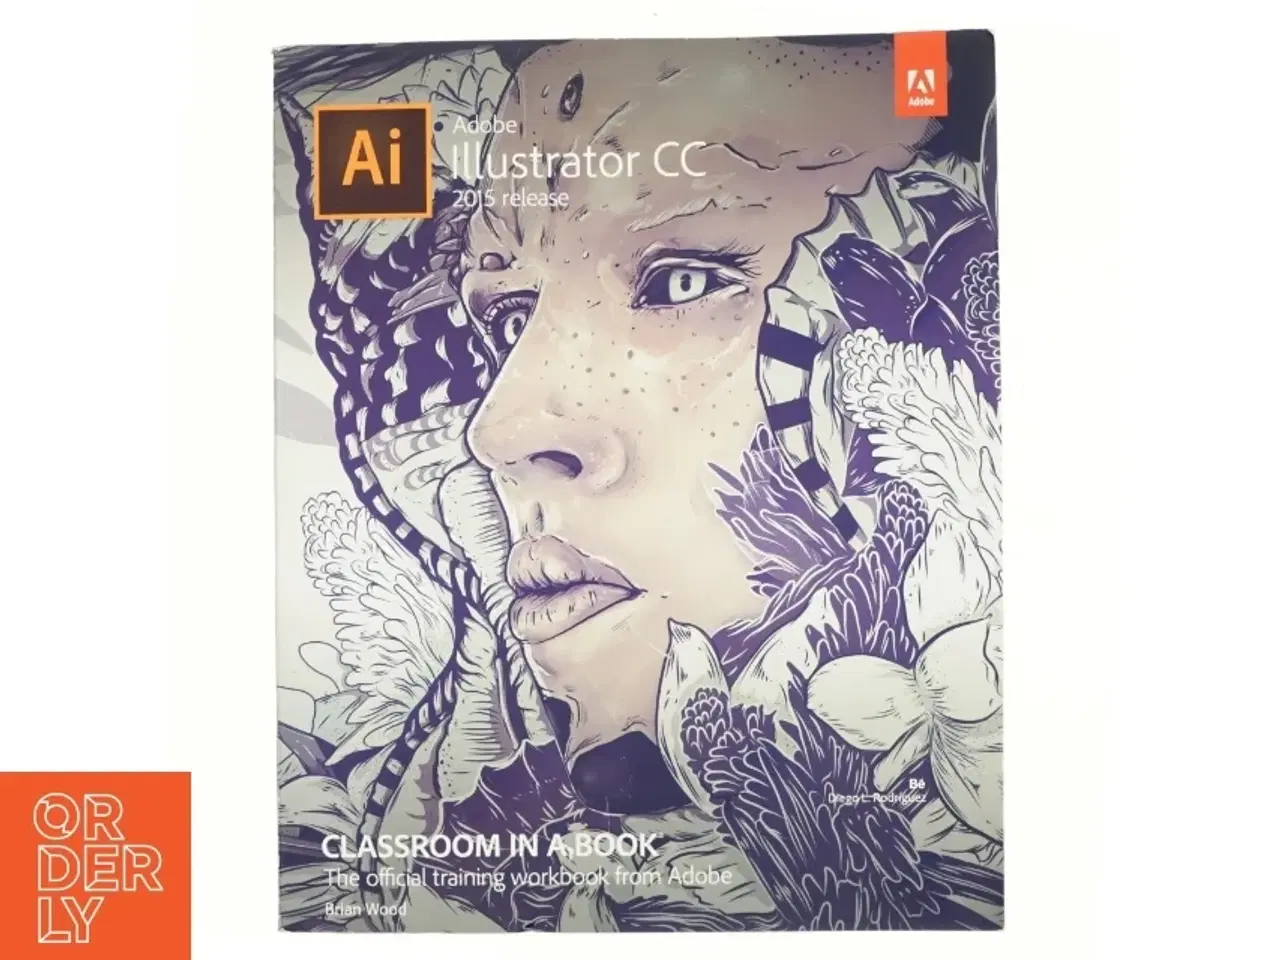 Billede 1 - Adobe Illustrator CC - 2015 release af Brian Wood (Bog)